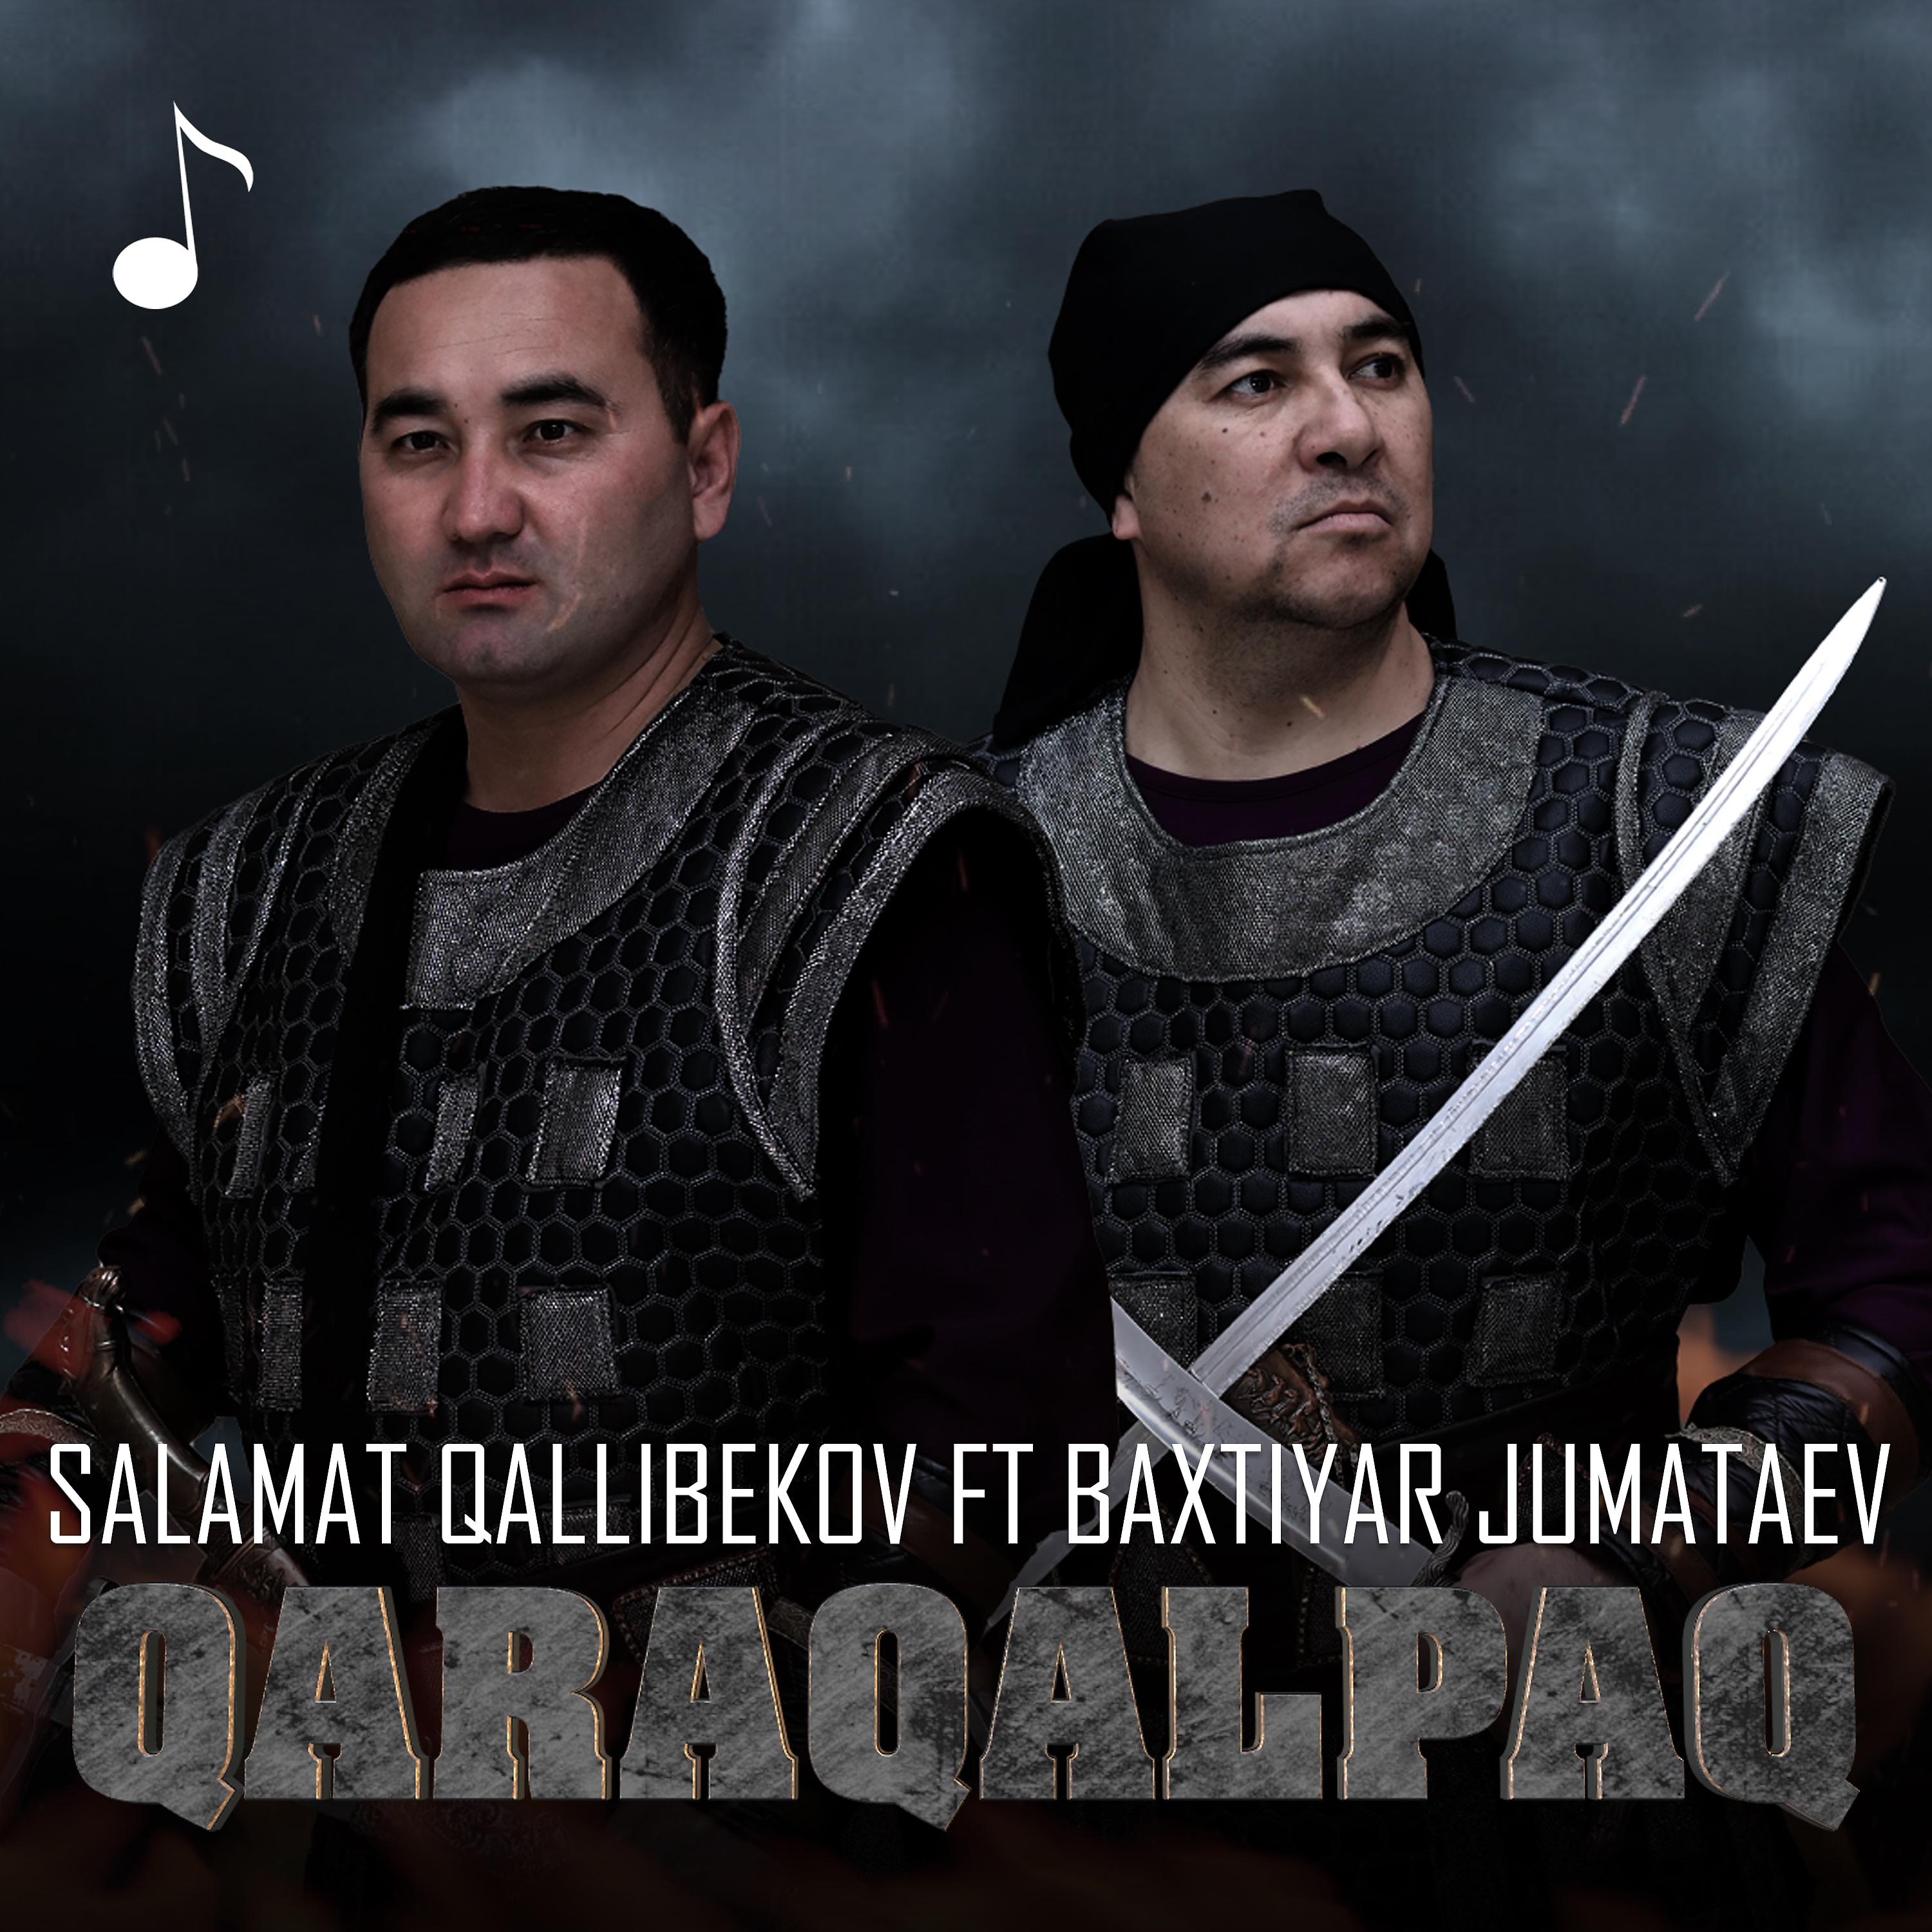 Постер альбома Qaraqalpaq